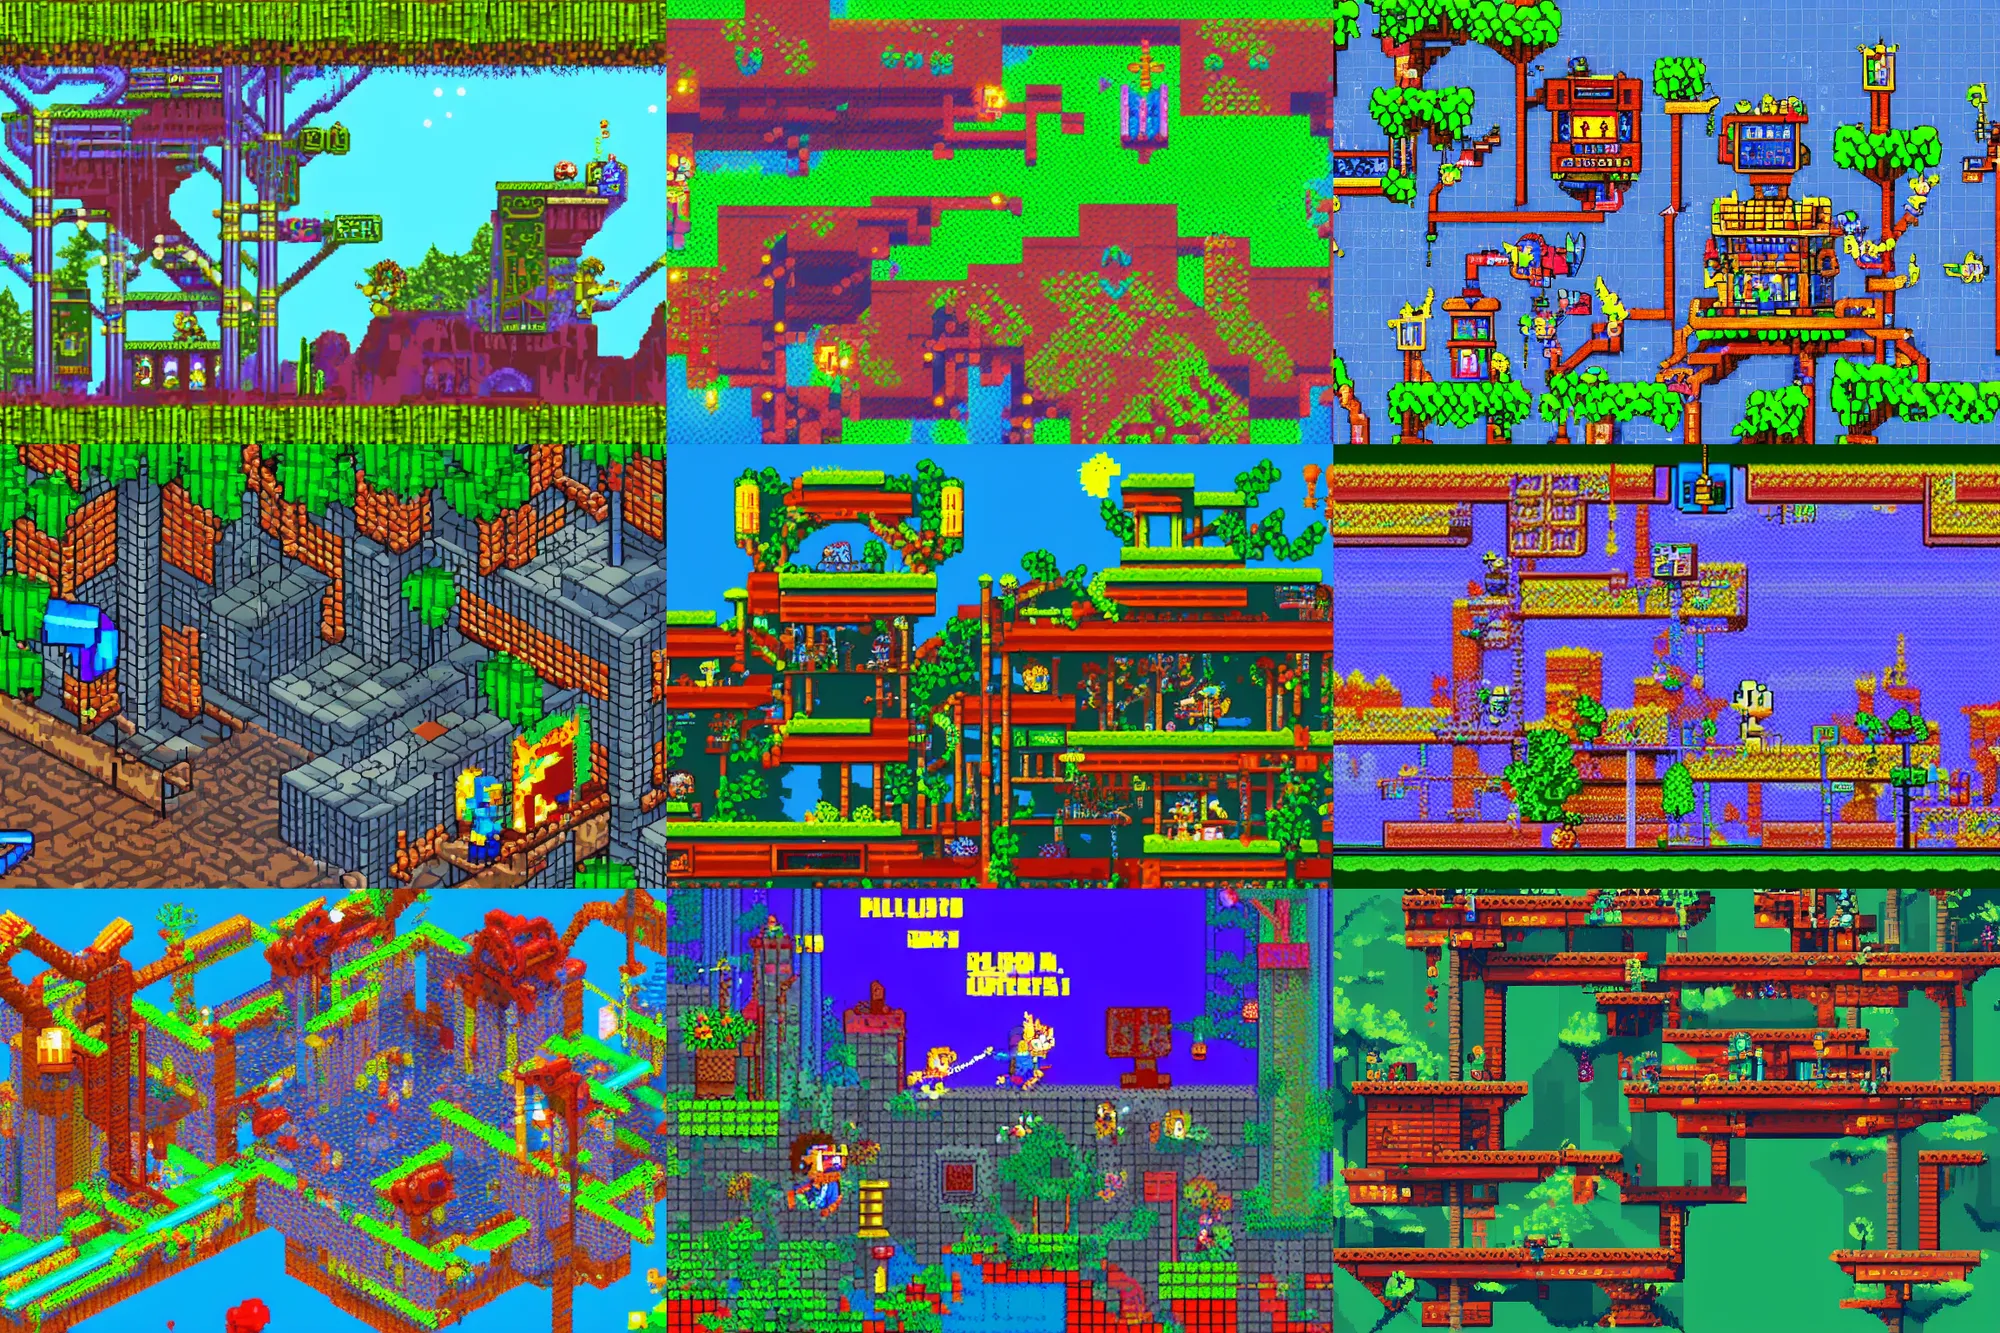 Prompt: a pixel art retro platformer videogame screenshot, abandoned cyberpunk amusement park built on floating rock gardens